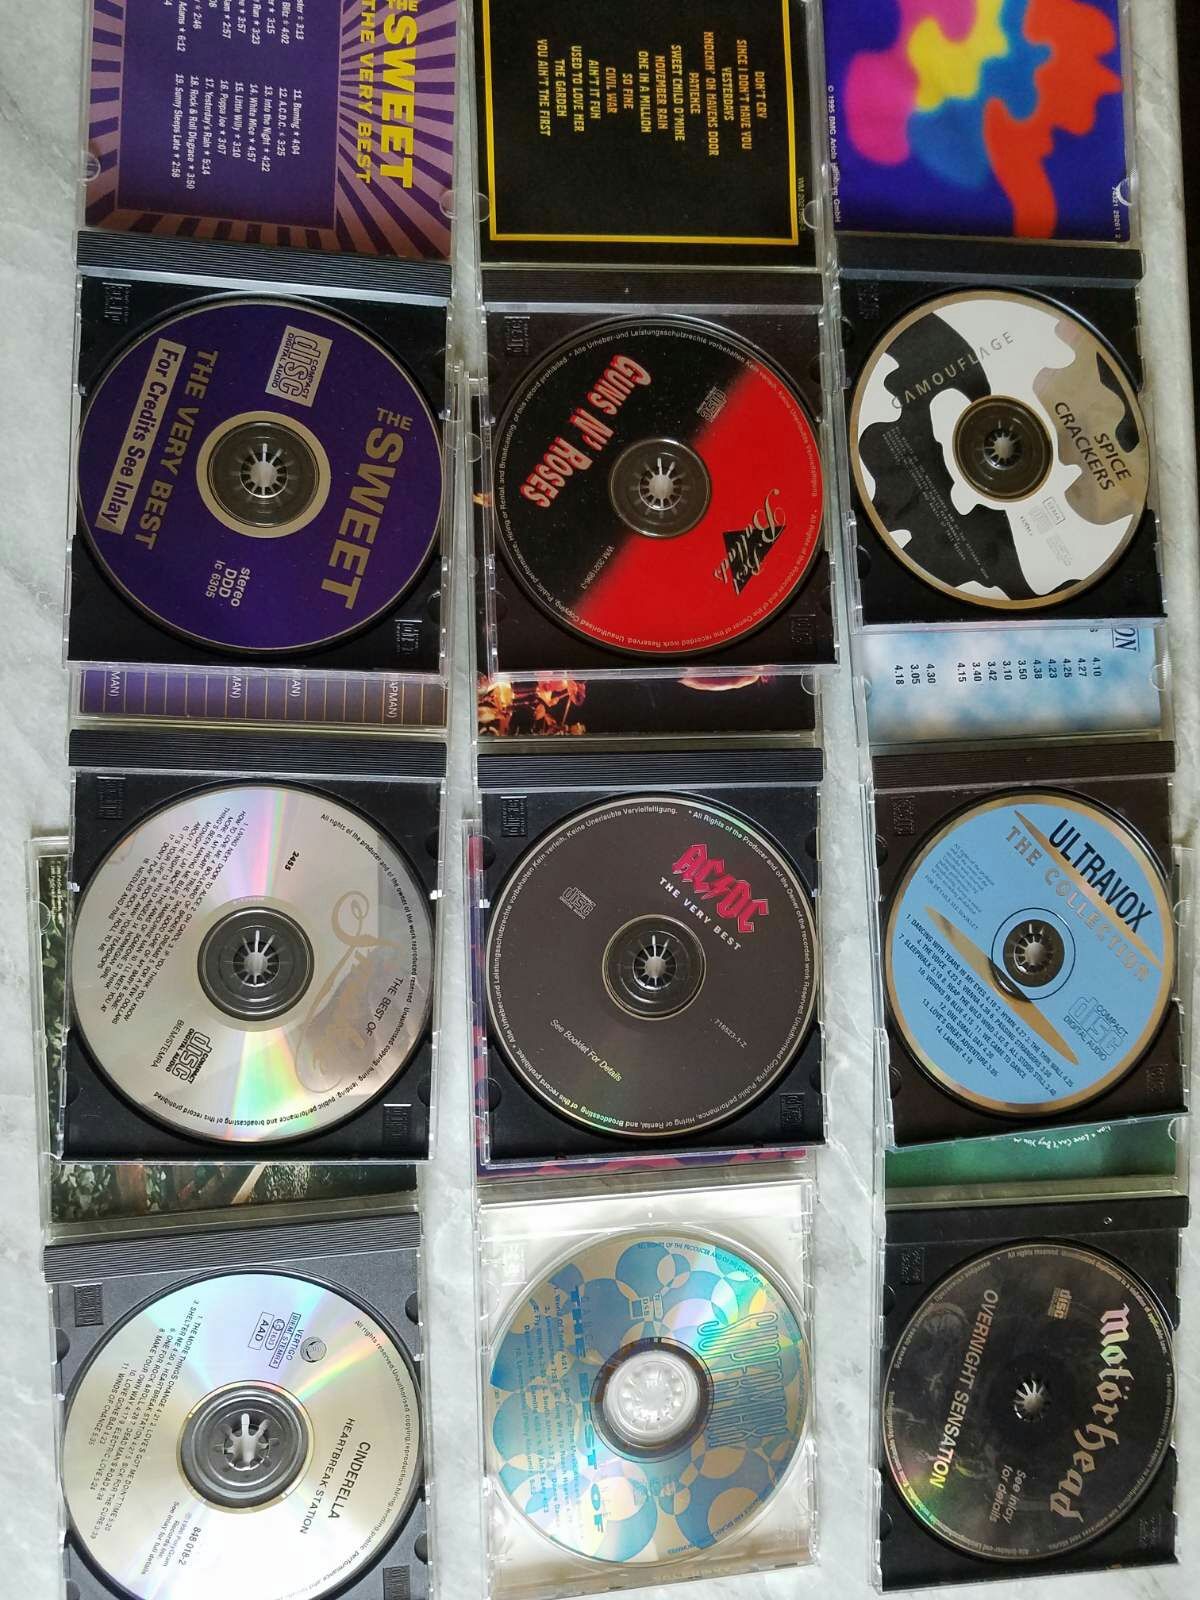 Музыка на CD - диски разных производителей, доп. фото в сообщении